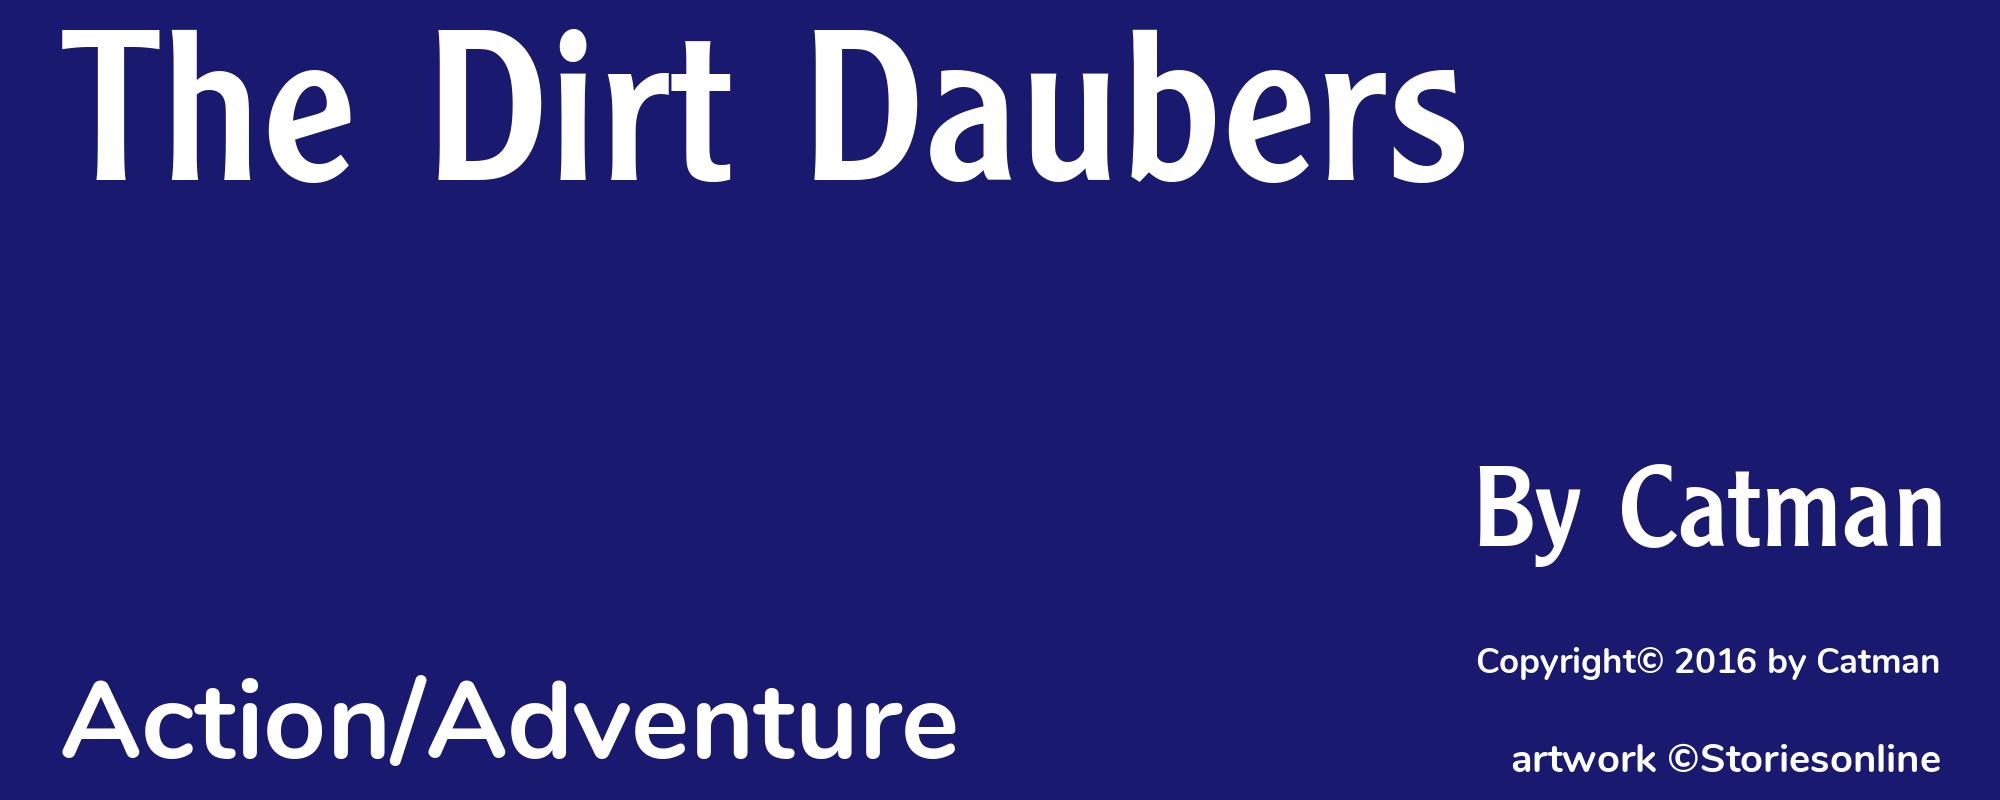 The Dirt Daubers - Cover